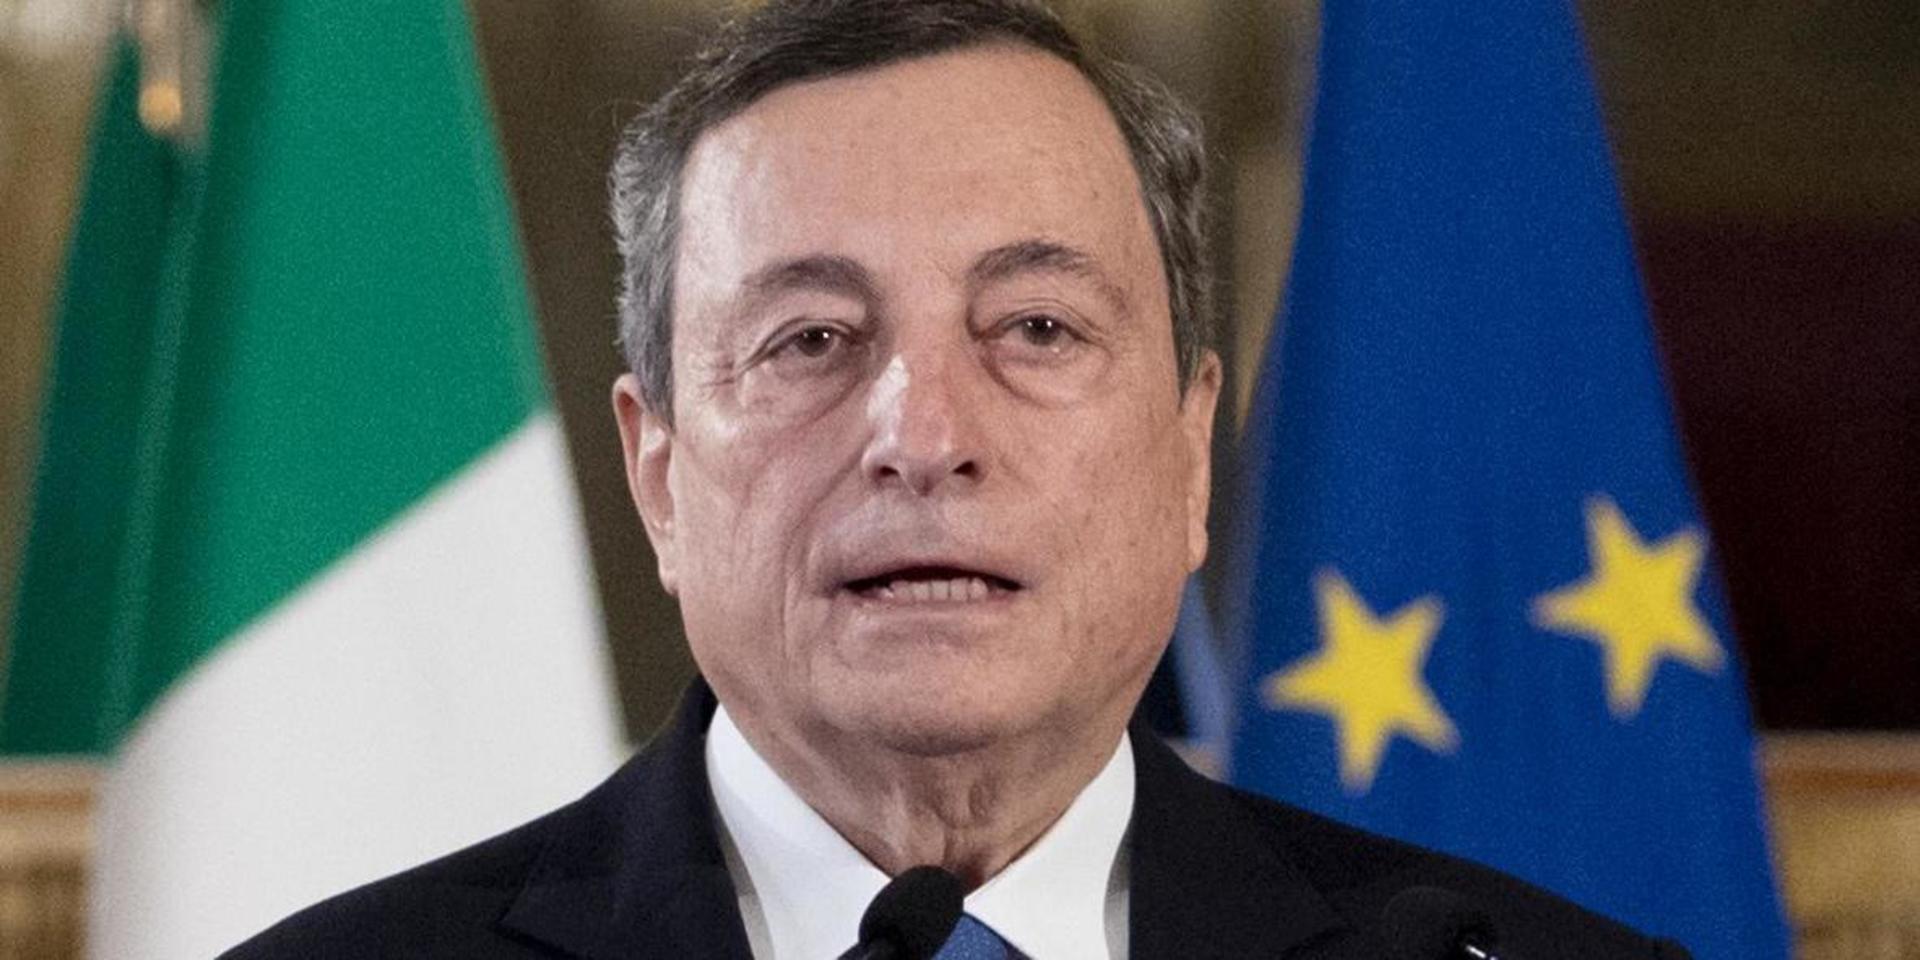 Mario Draghi kan bli Italiens nya premiärminister – om han kan få tillräckligt många partier att enas om en plattform.